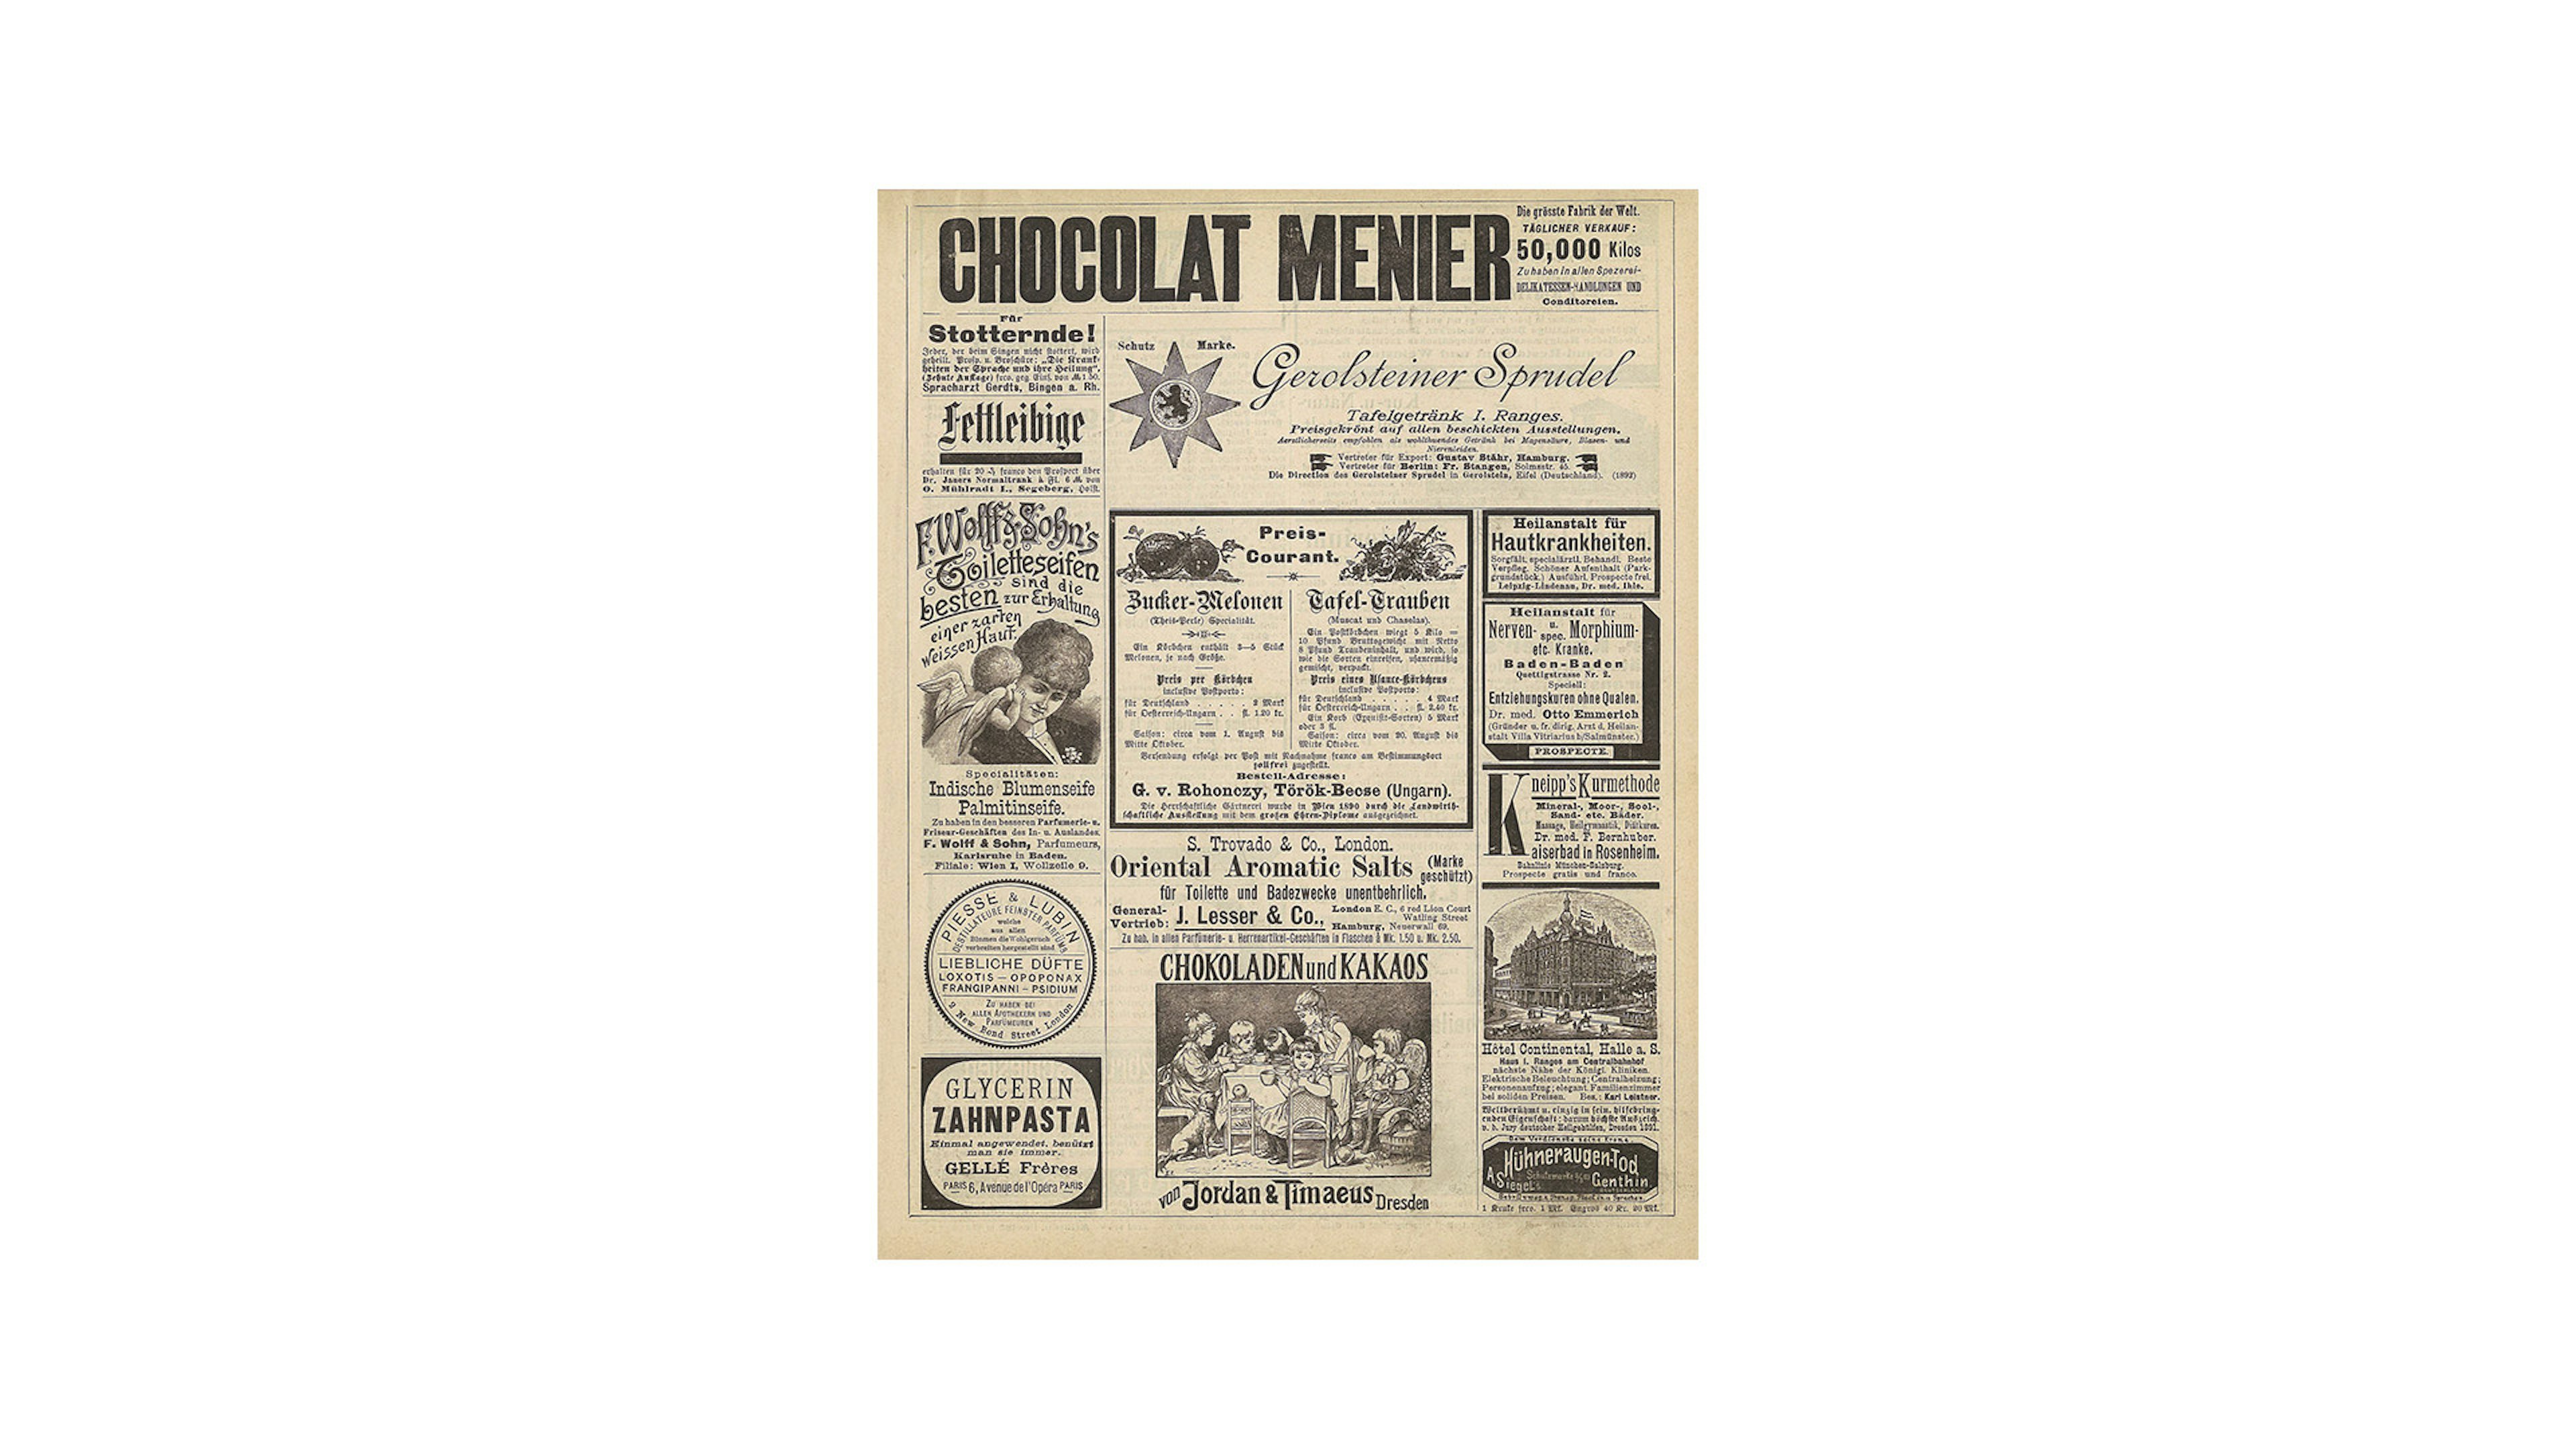 Die Titelseite der "Chocolat Menier", an oberer Stelle ist eine Zeitunsganzeige der Gerolsteiner Sprudel